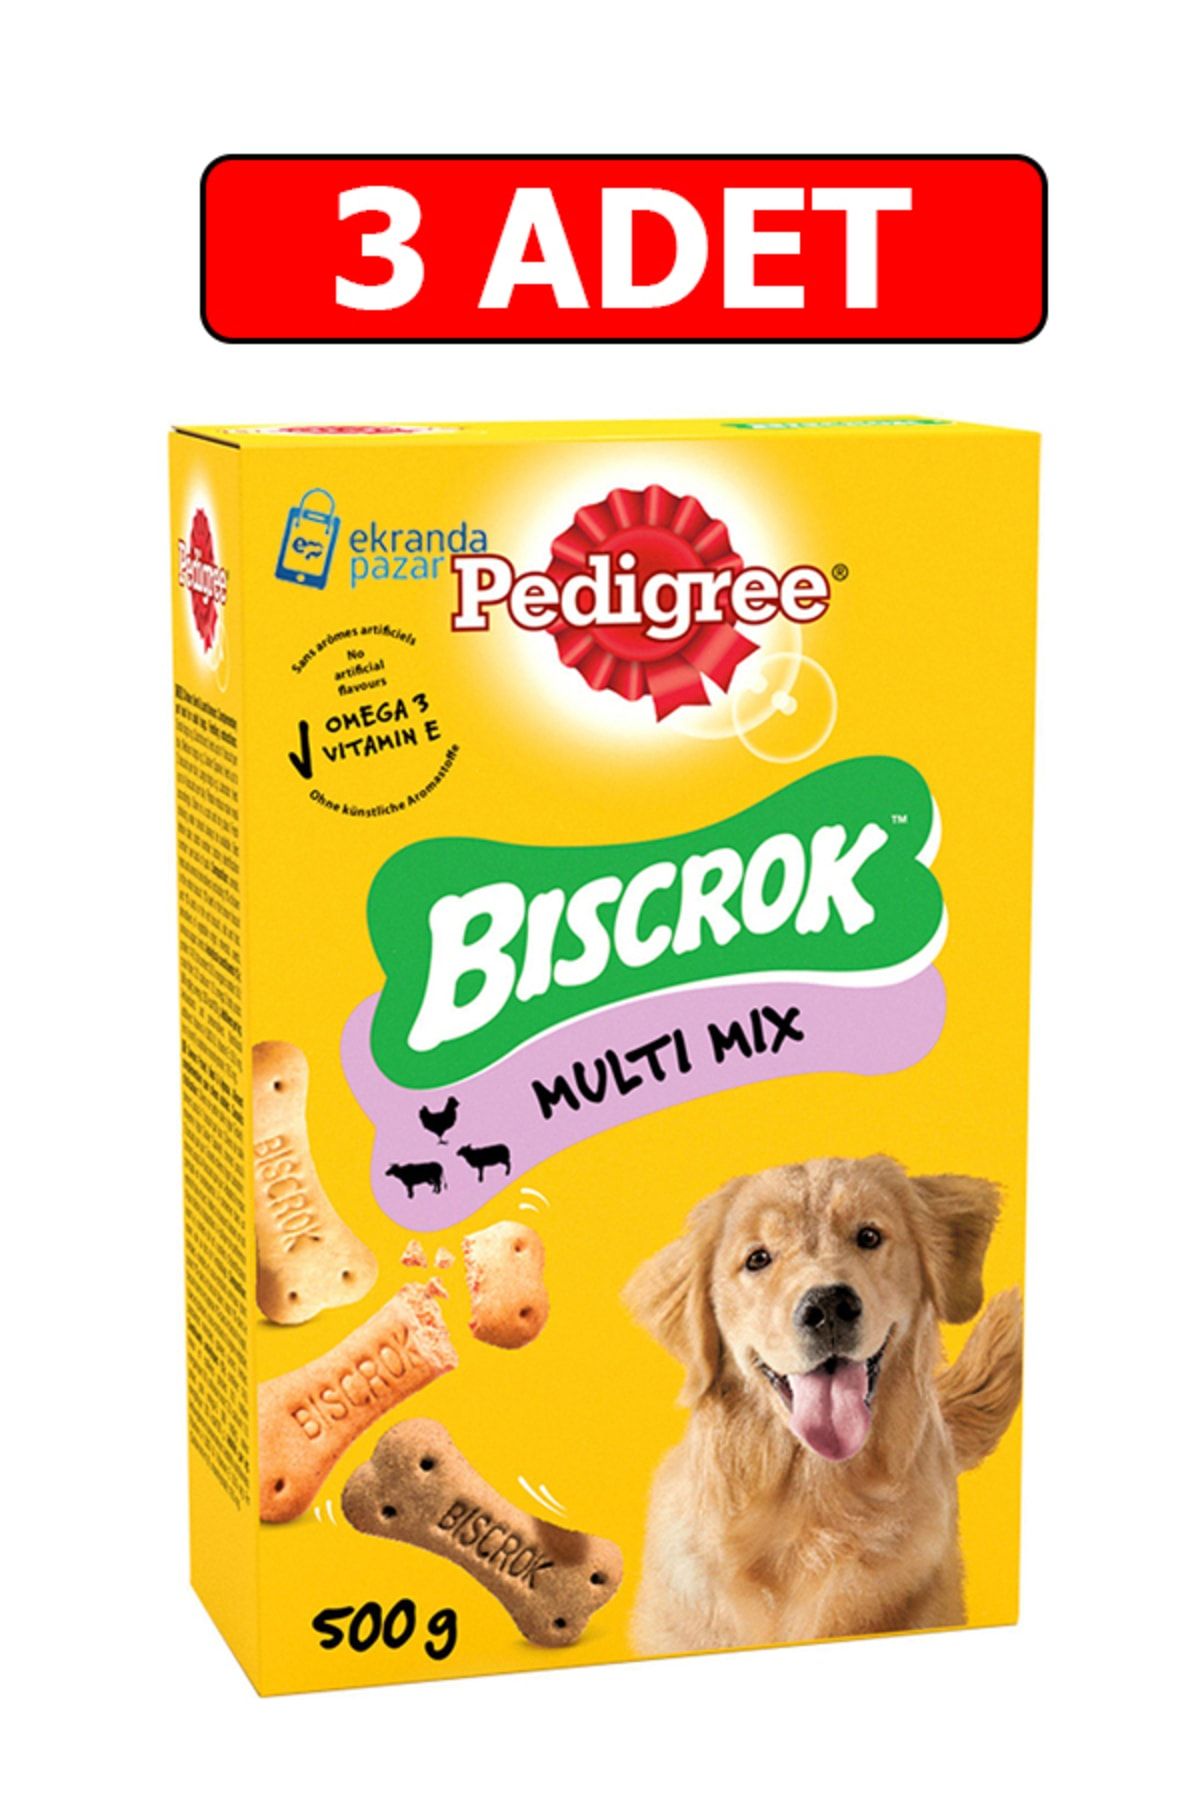 Pedigree Biscrok Multi Mix 3 Adet 500gr Köpek Ödül Bisküvi Köpek Ödül Maması